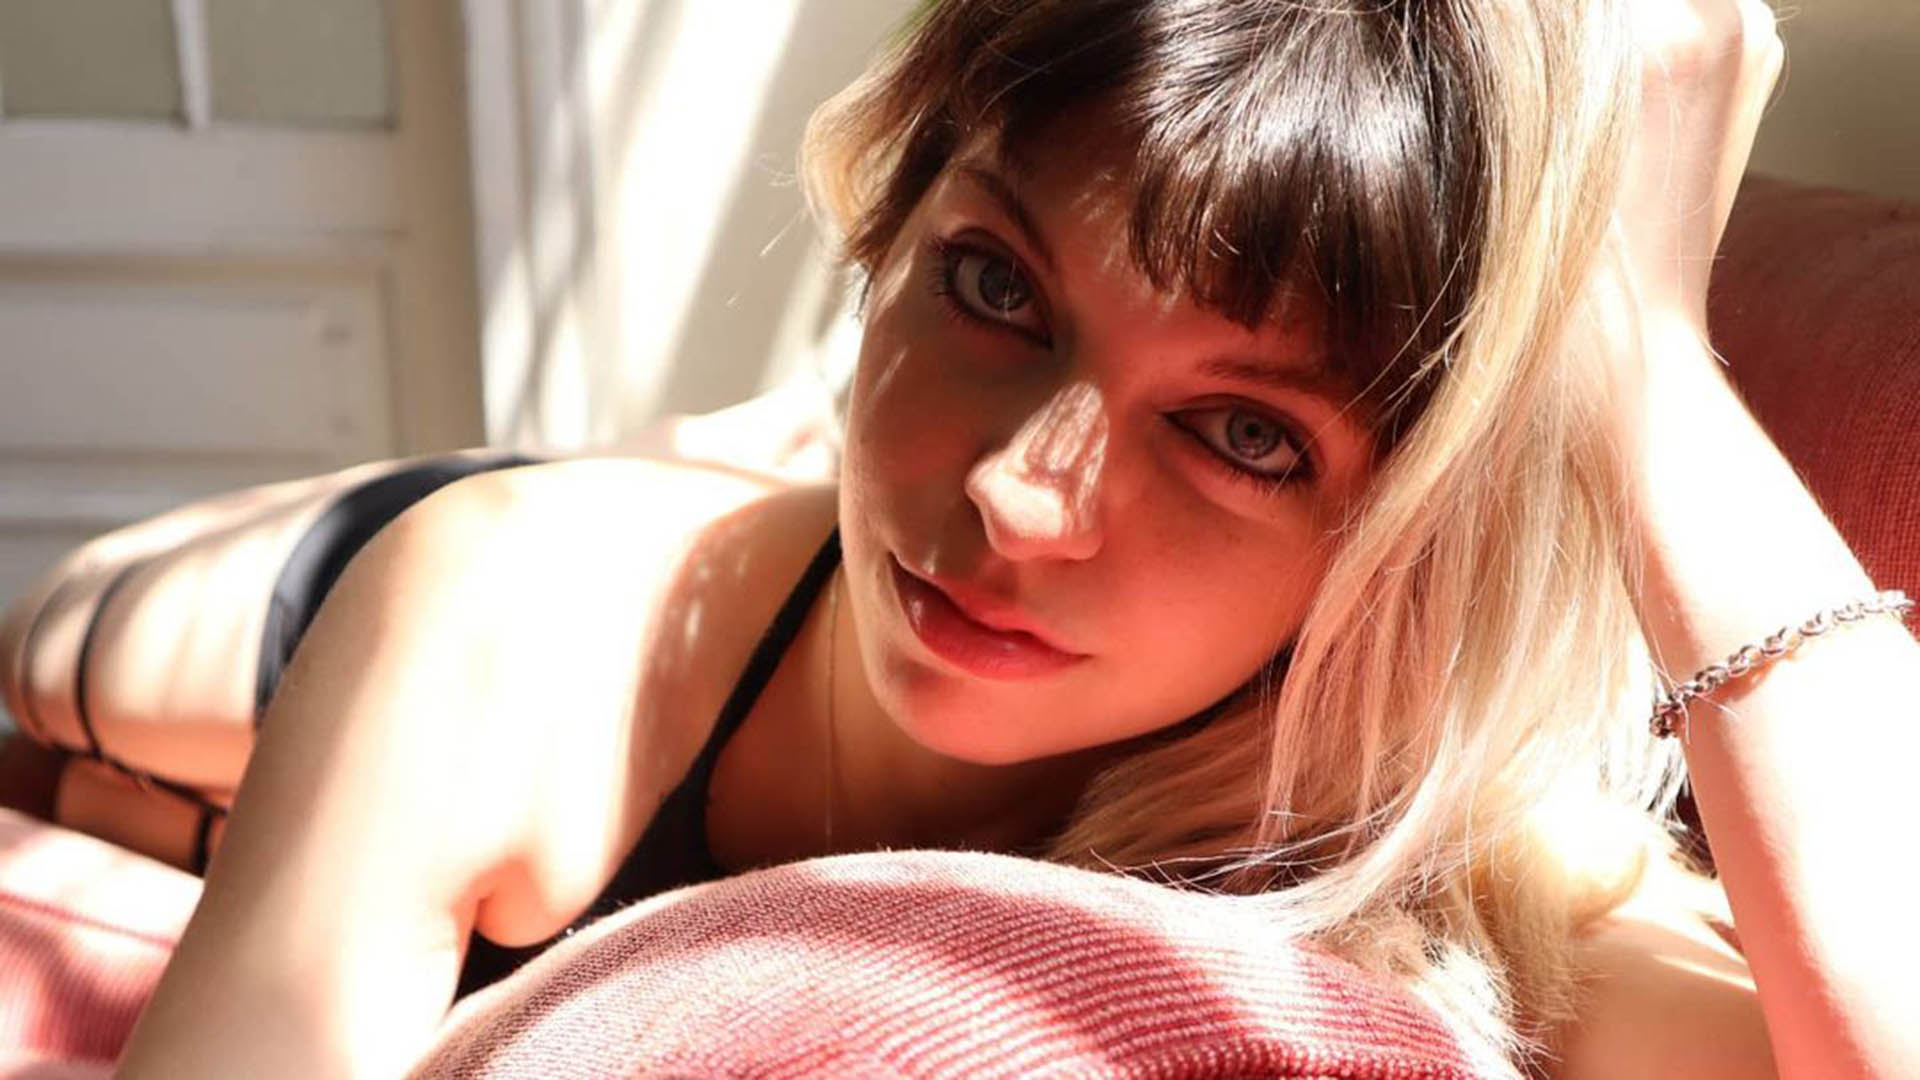 Es argentina y la llaman “la youtuber del porno” mientras se graba teniendo sexo, hace tutoriales imagen